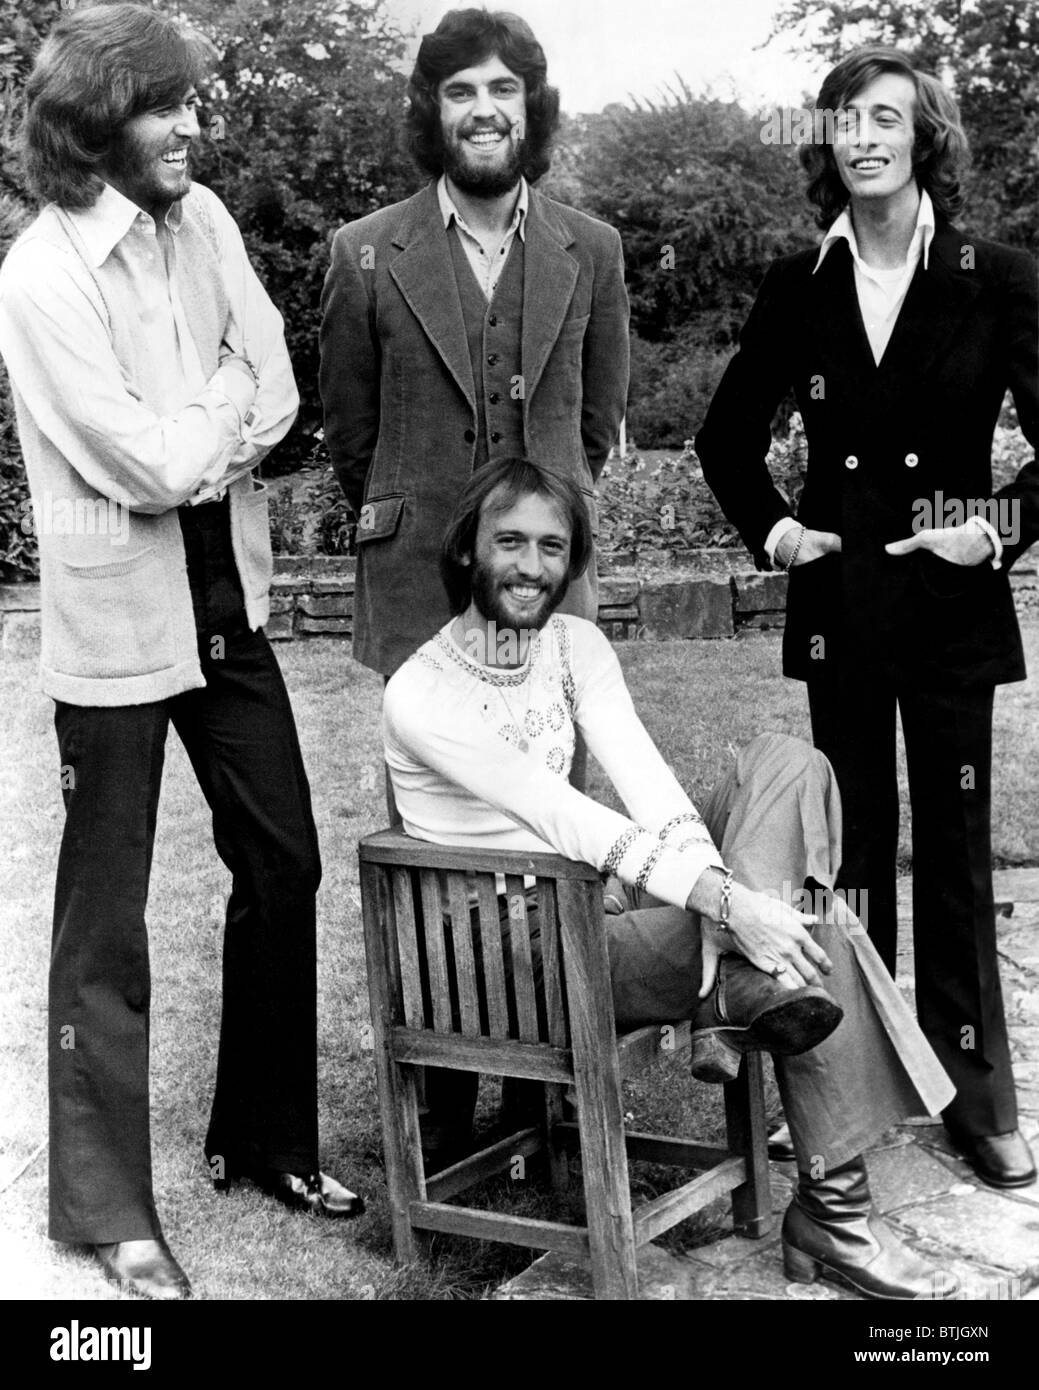 Bee Gees, (debout, de g à d) : Barry Gibb, Vince Melouney, Robin Gibb, (assis) : Maurice Gibb, ca au début des années 1970. Banque D'Images